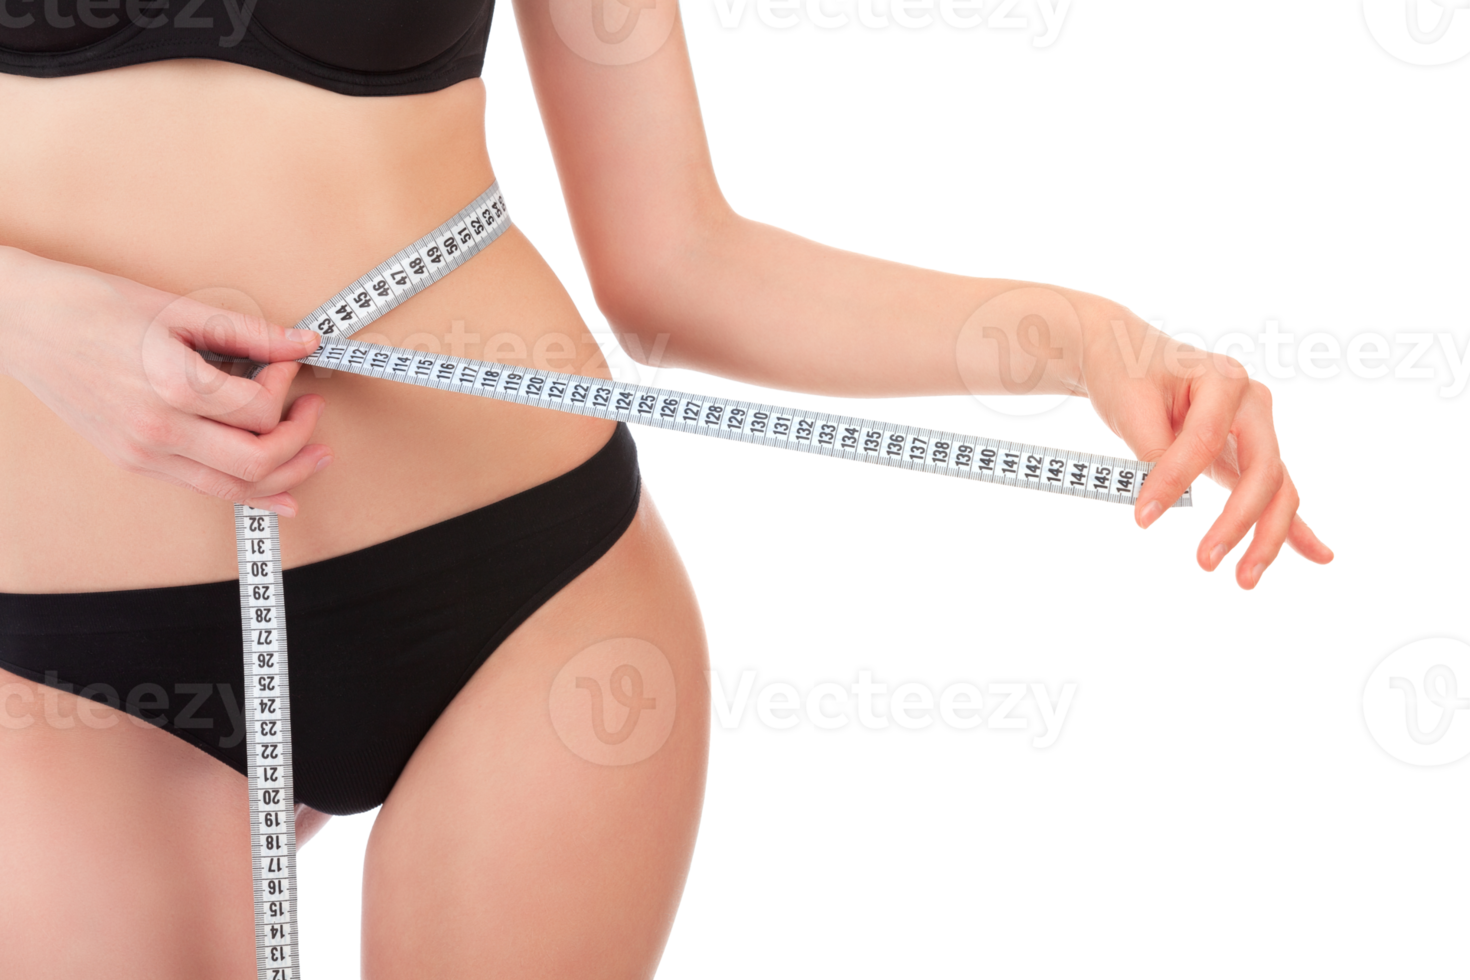 mulher esbelta medindo sua cintura com fita métrica após uma dieta, isolada png